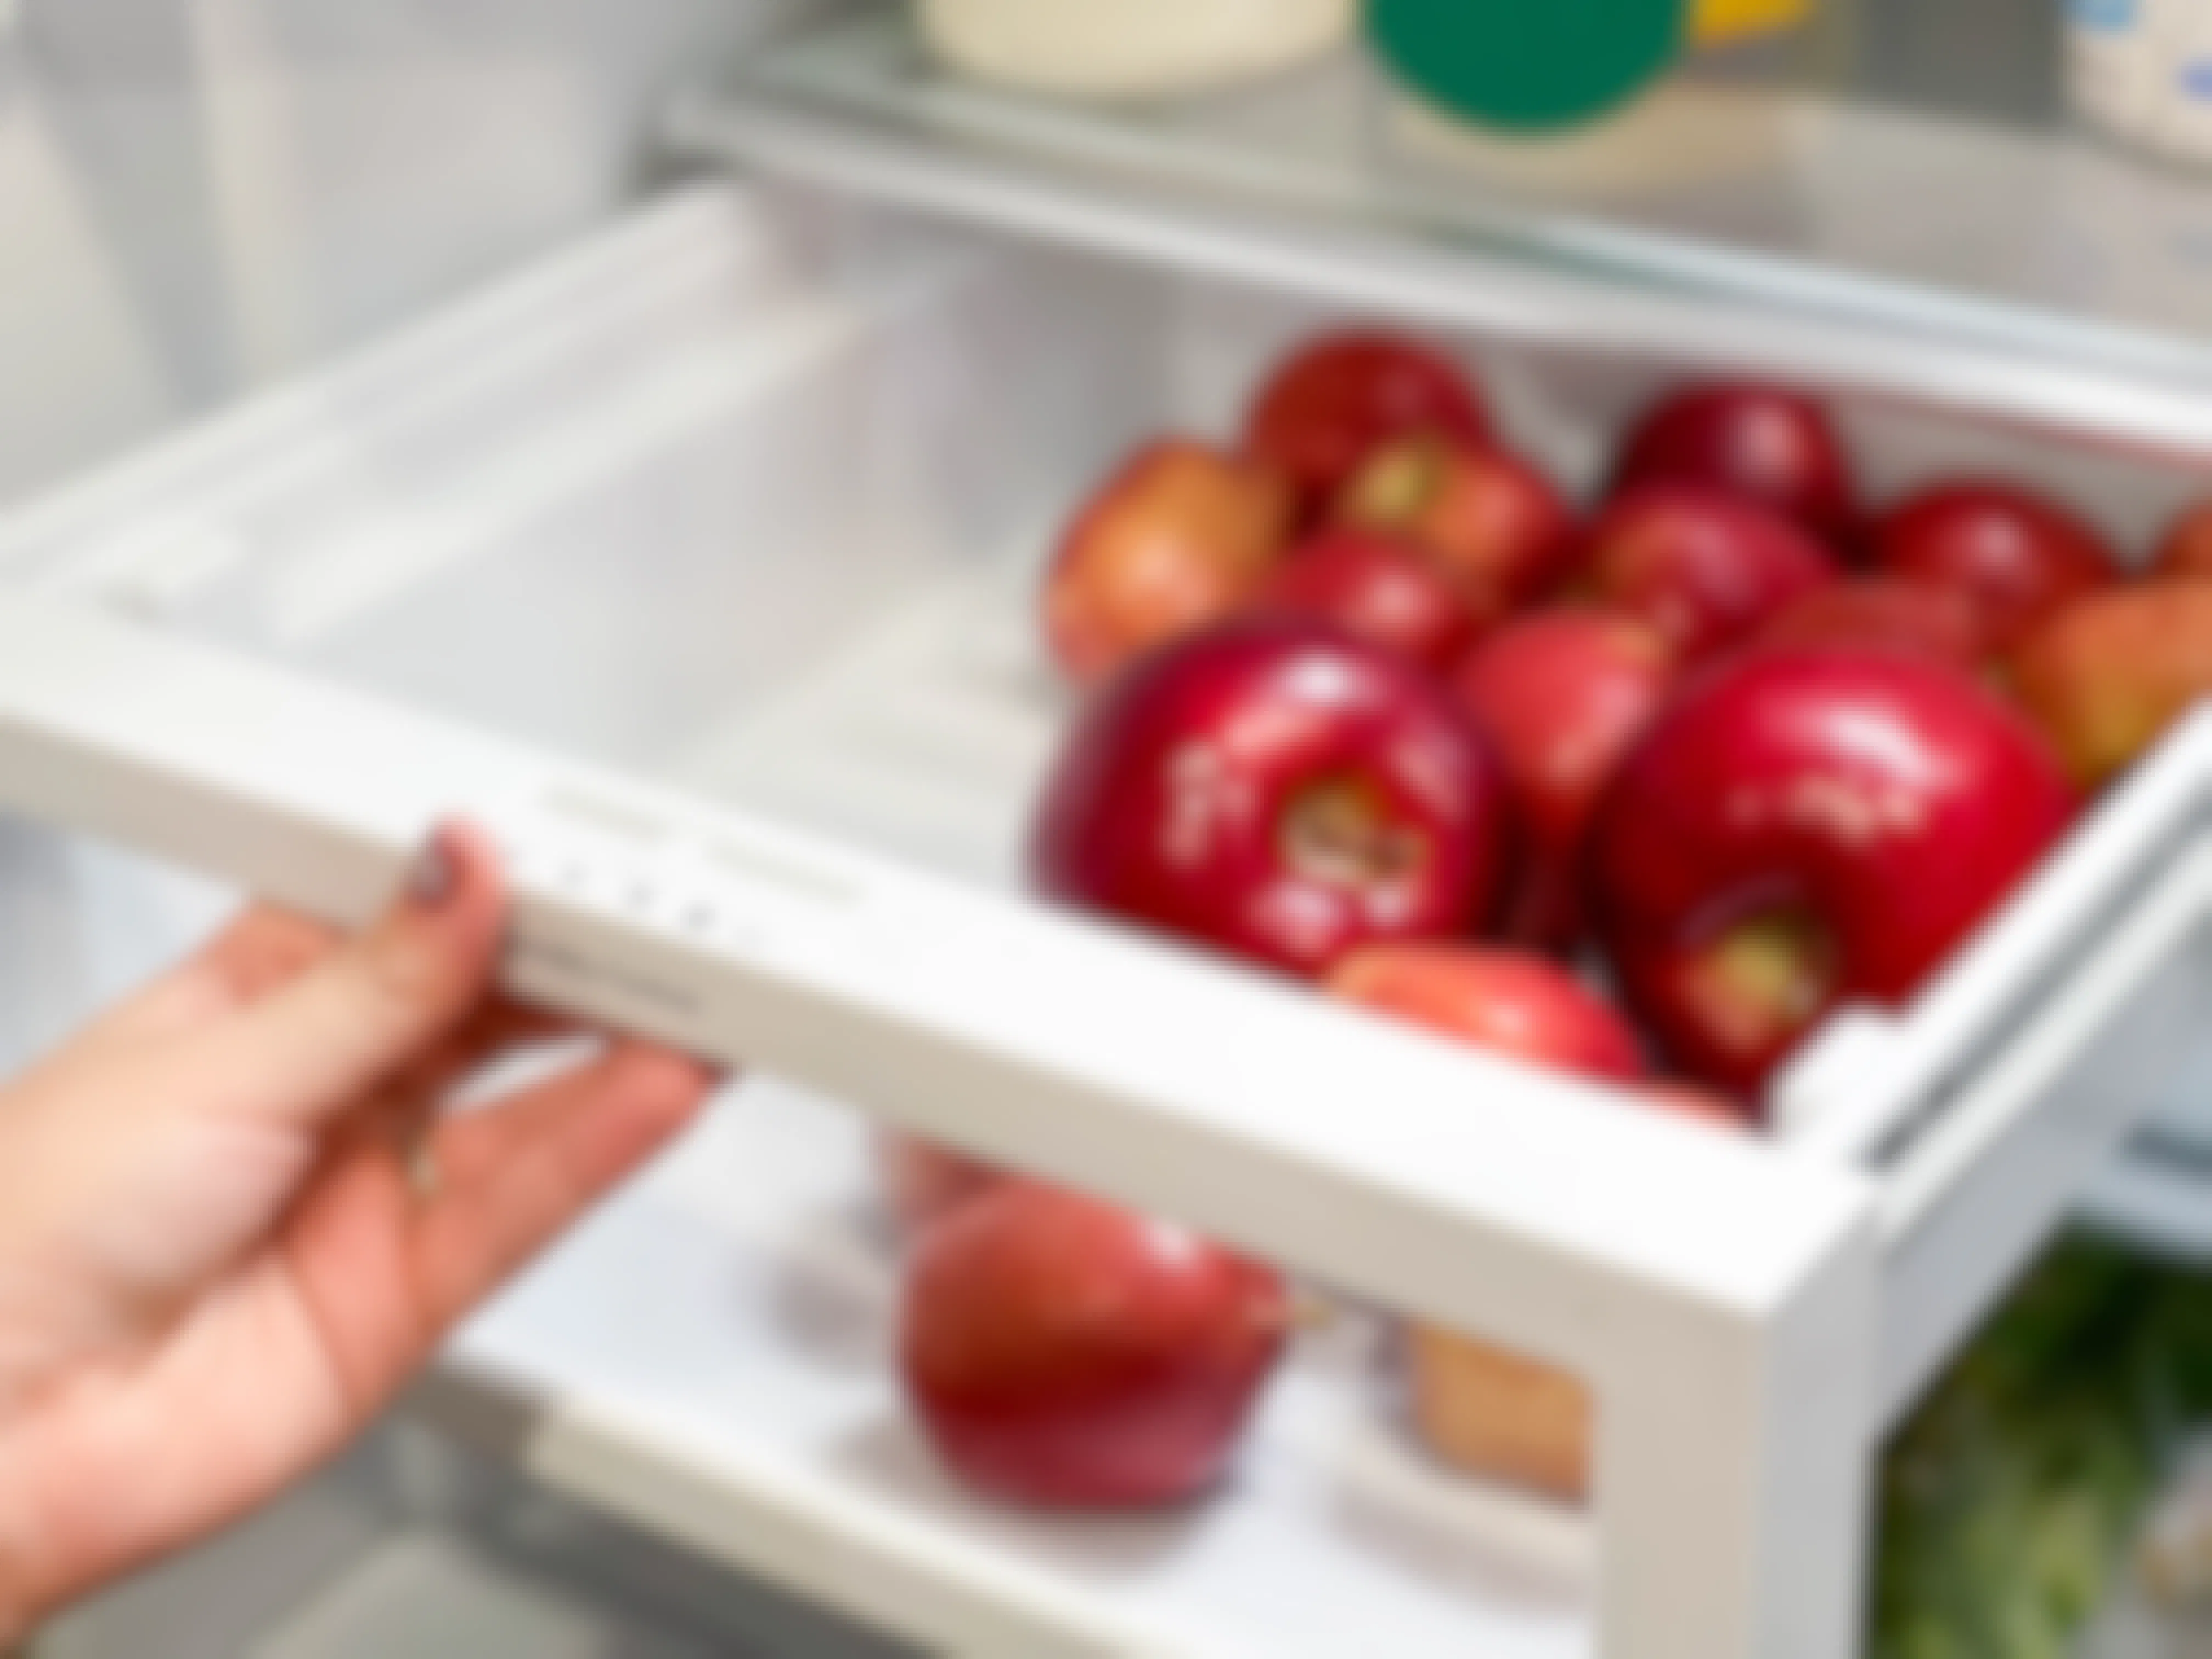 apples in fridge crisper drawer